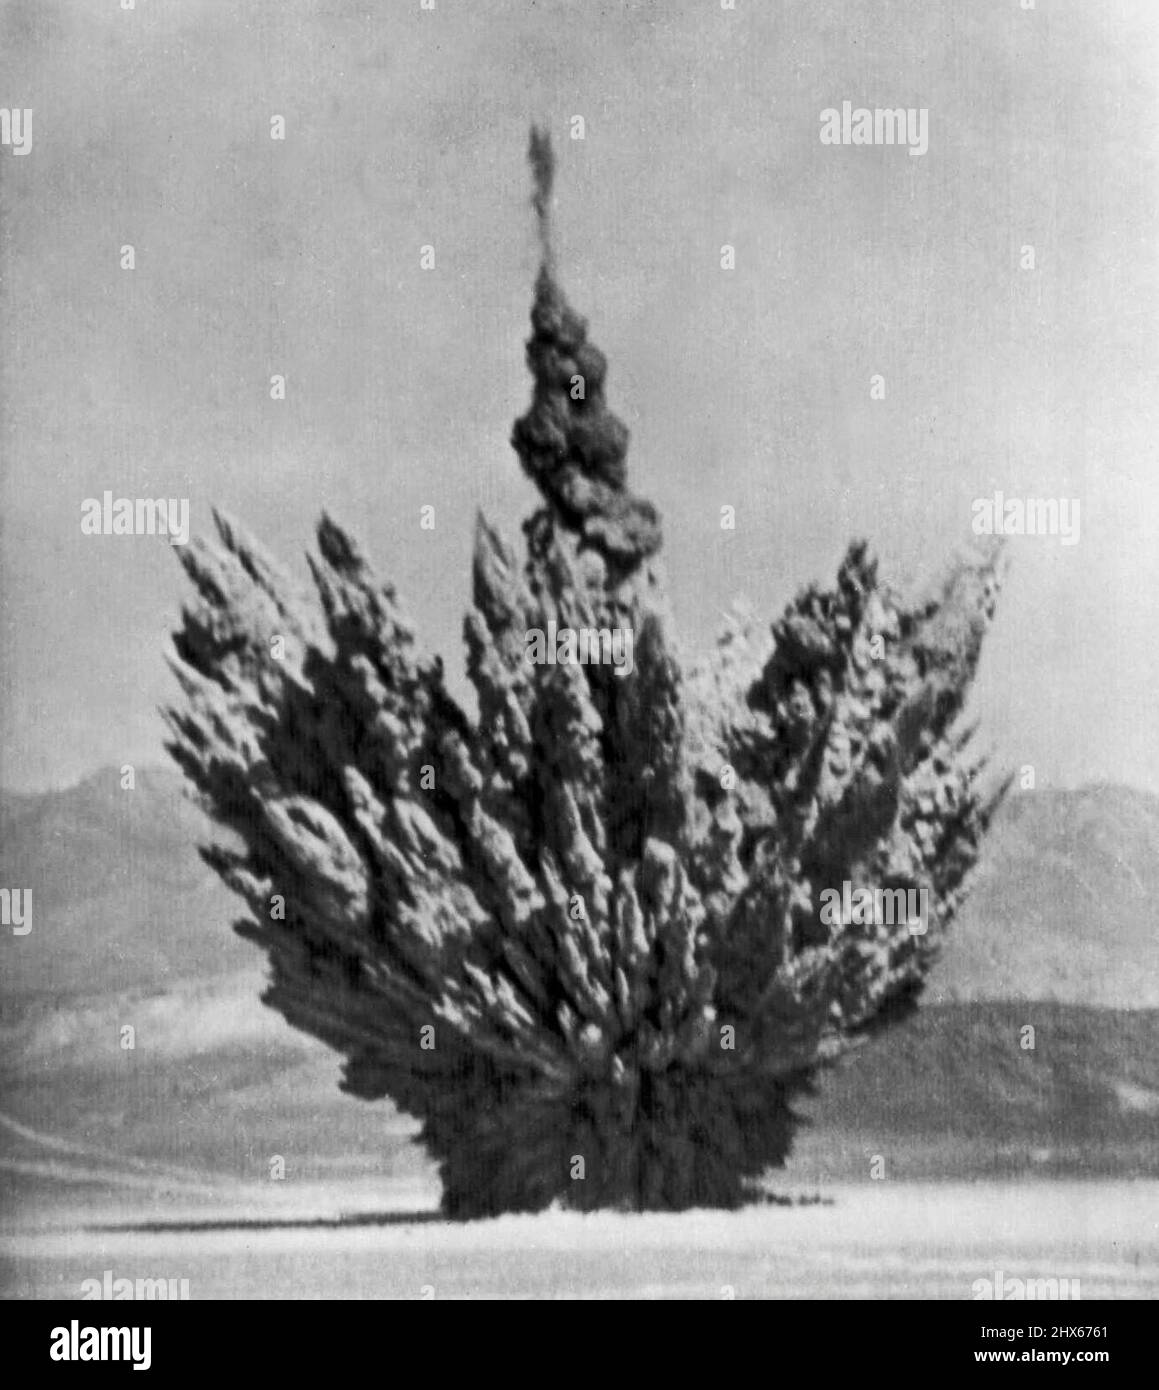 Underground A-Blast -- bei einem Staubefall entstand der heutige Underground A-Blast in Yucca Flat. Die Suboberflächendetonation ist die siebte in der aktuellen 'Teekannen'-Serie. Dieses Bild wurde auf dem Testgelände aufgenommen und von der Atomenergiekommission freigegeben. 23. März 1955. (Foto von AP Wirephoto). Stockfoto